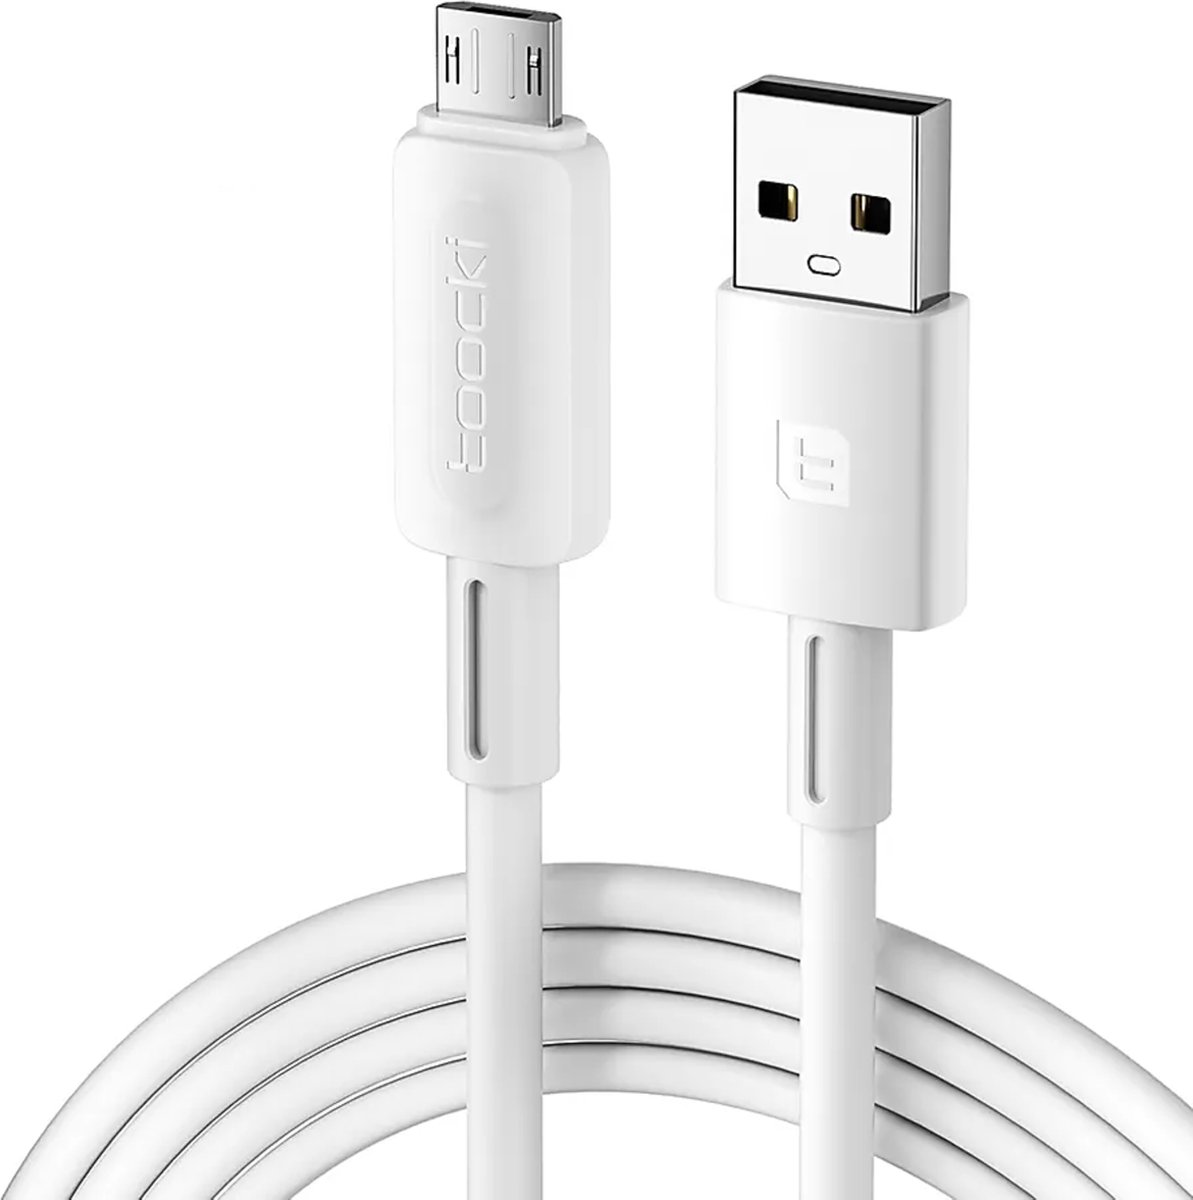 Toocki Oplaadkabel 'Fast Charging' - USB-A naar MICRO USB - 12W 2.4A Snellader - 1 Meter - voor Samsung, OnePlus, LG, Nokia, Huawei, Xiaomi, Sony, PS4, Xbox One, JBL, Motorola, Alcatel - Tot 2 Keer Sneller - 480Gbps - Snoer van TPE-Rubber - WIT